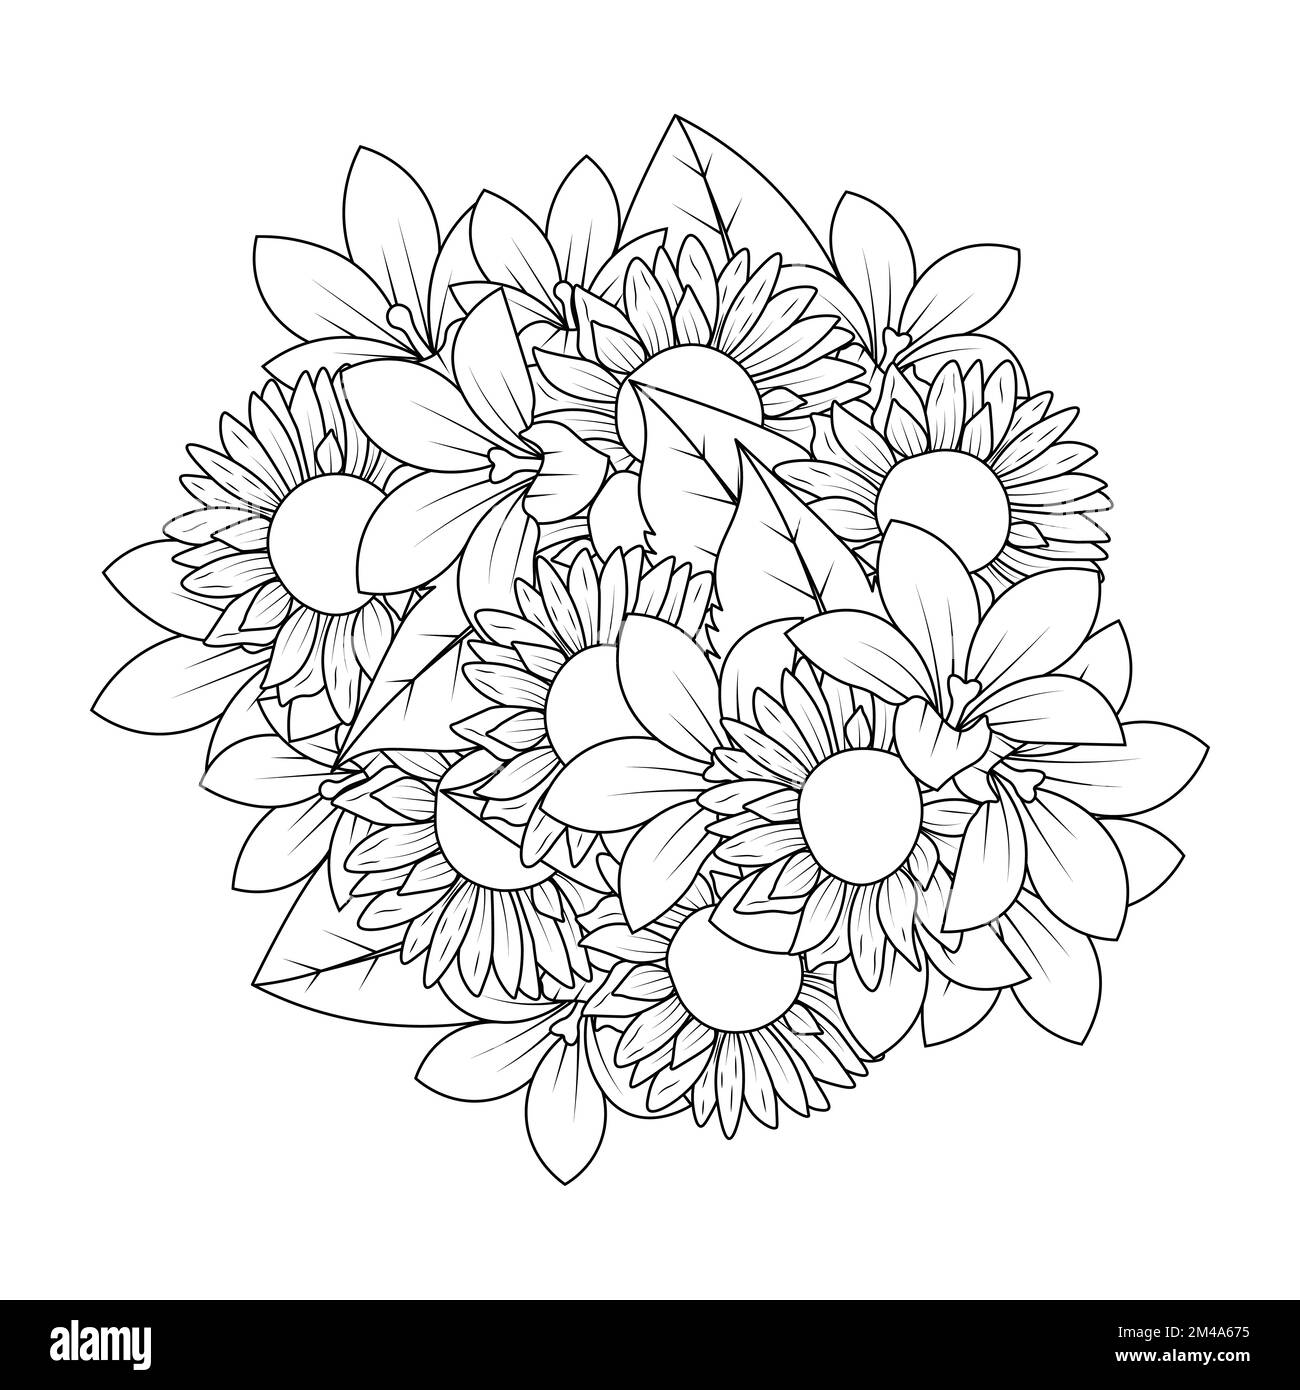 Sonnenblumen-Doodle-Art-Vektordesign mit Strichgrafiken-Malseite und einfachem Zeichnen mit Bleistift Stock Vektor